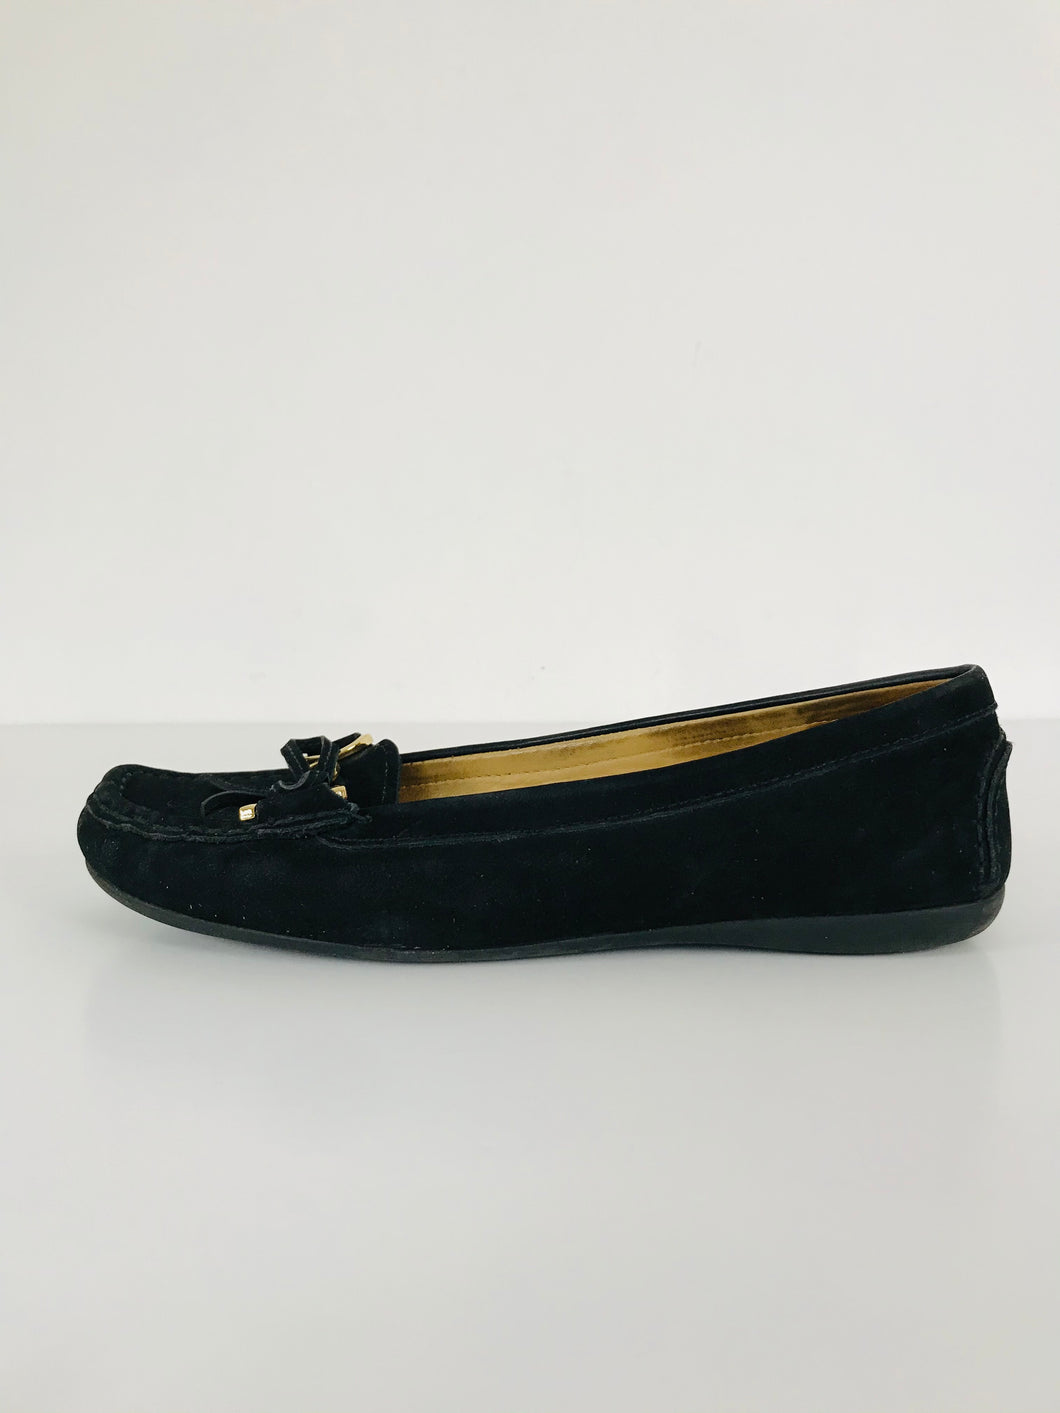 Carvela Women’s Moccasin Suede Slip On Pumps Shoes Loafers | UK6 | Black